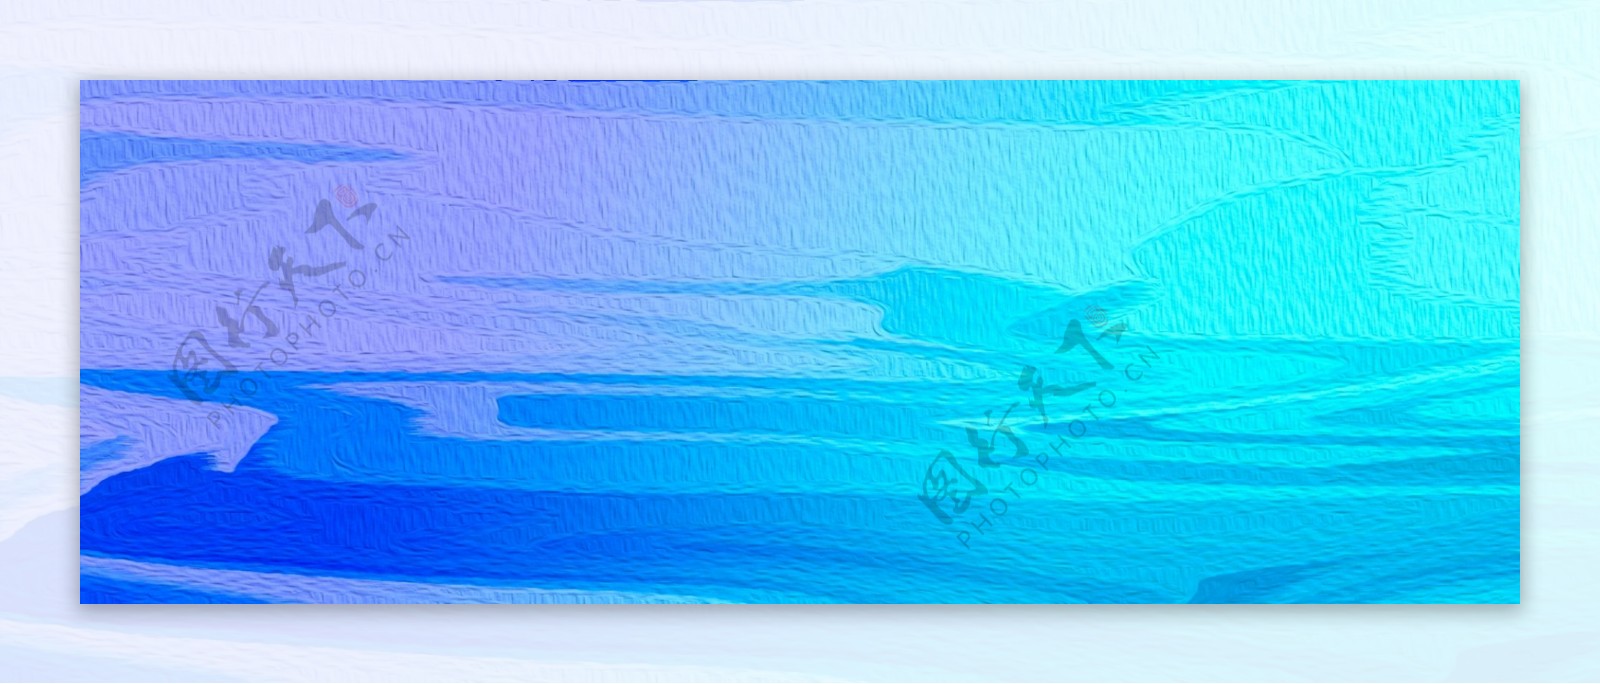 蓝色油画水波背景